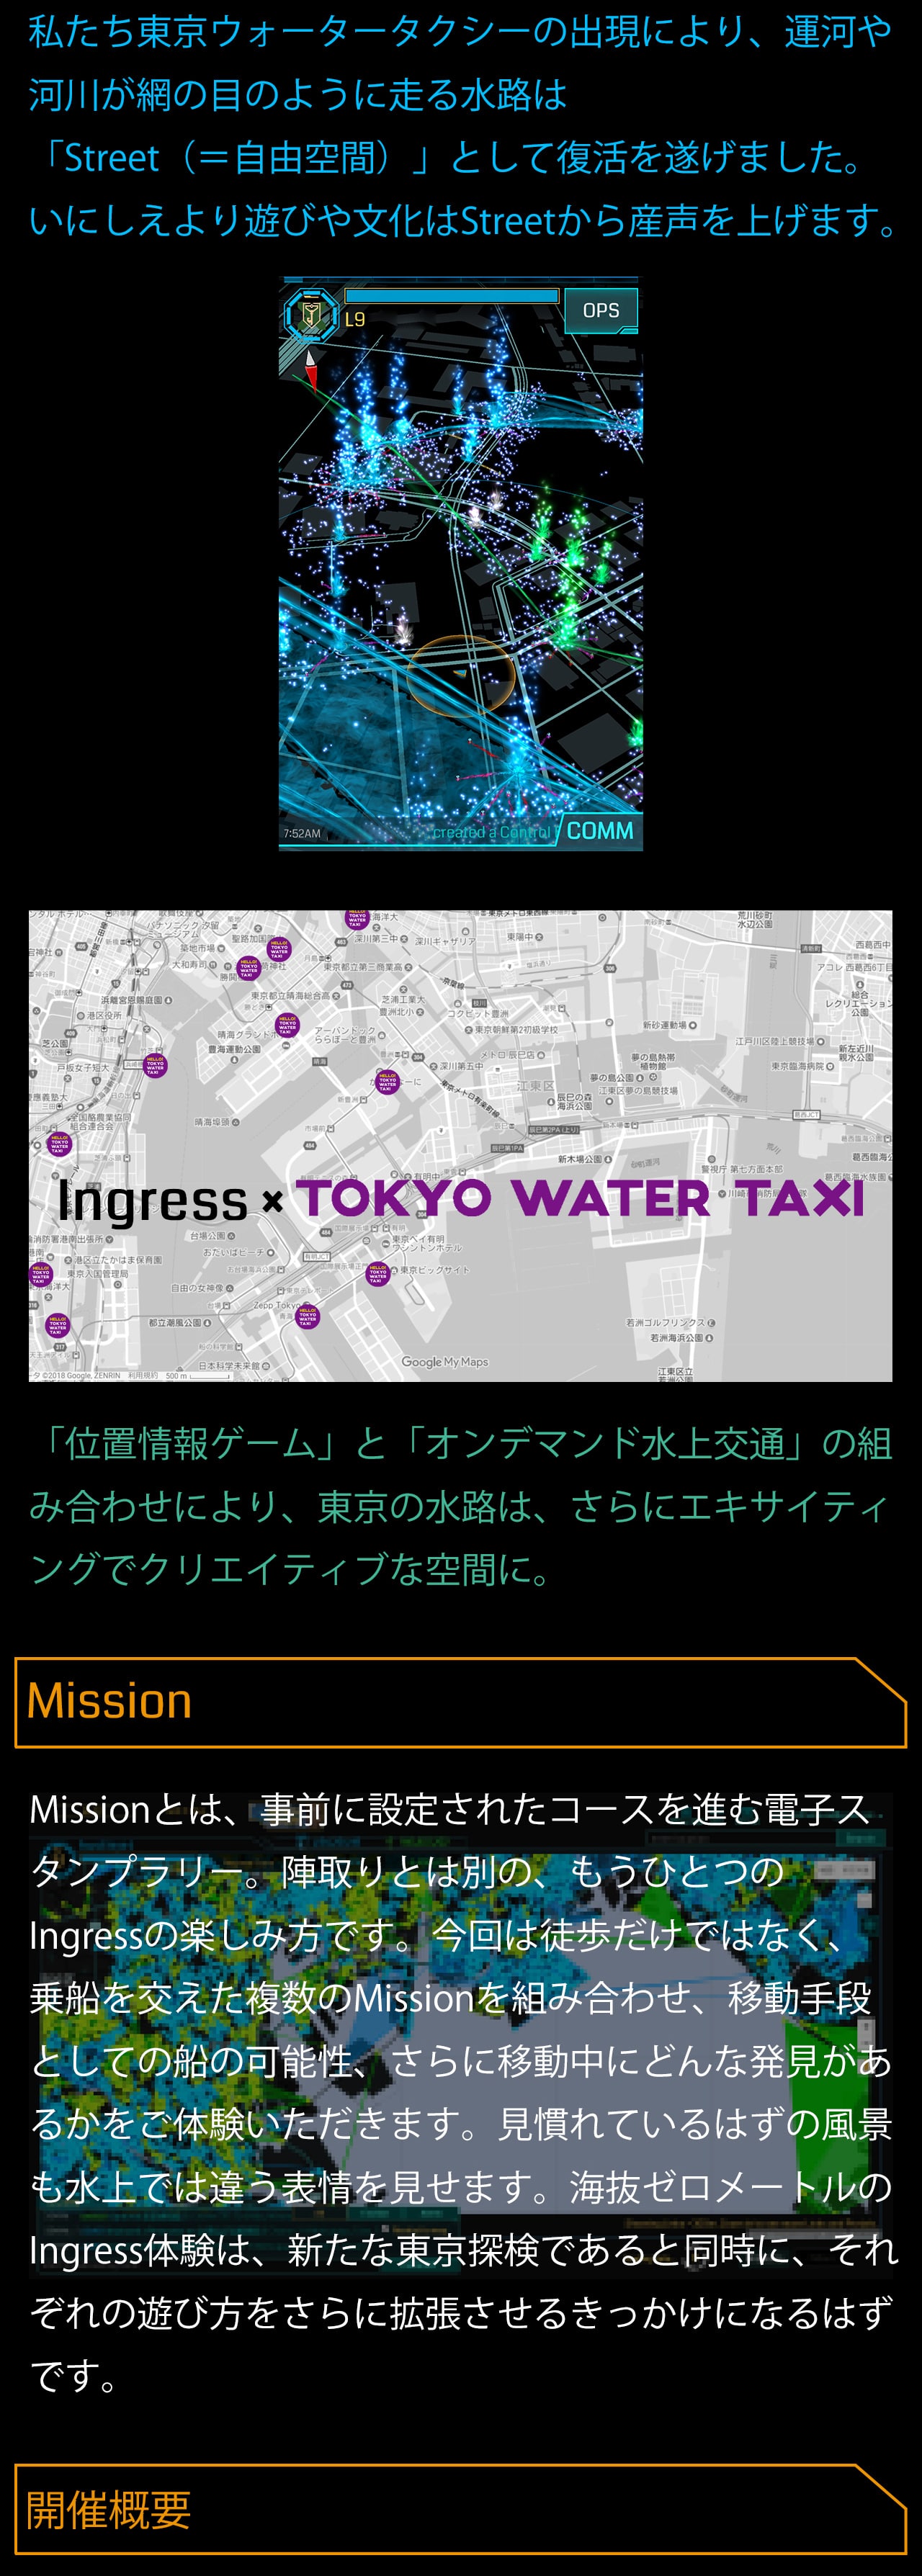 ingress×TOKYO WATER TAXI